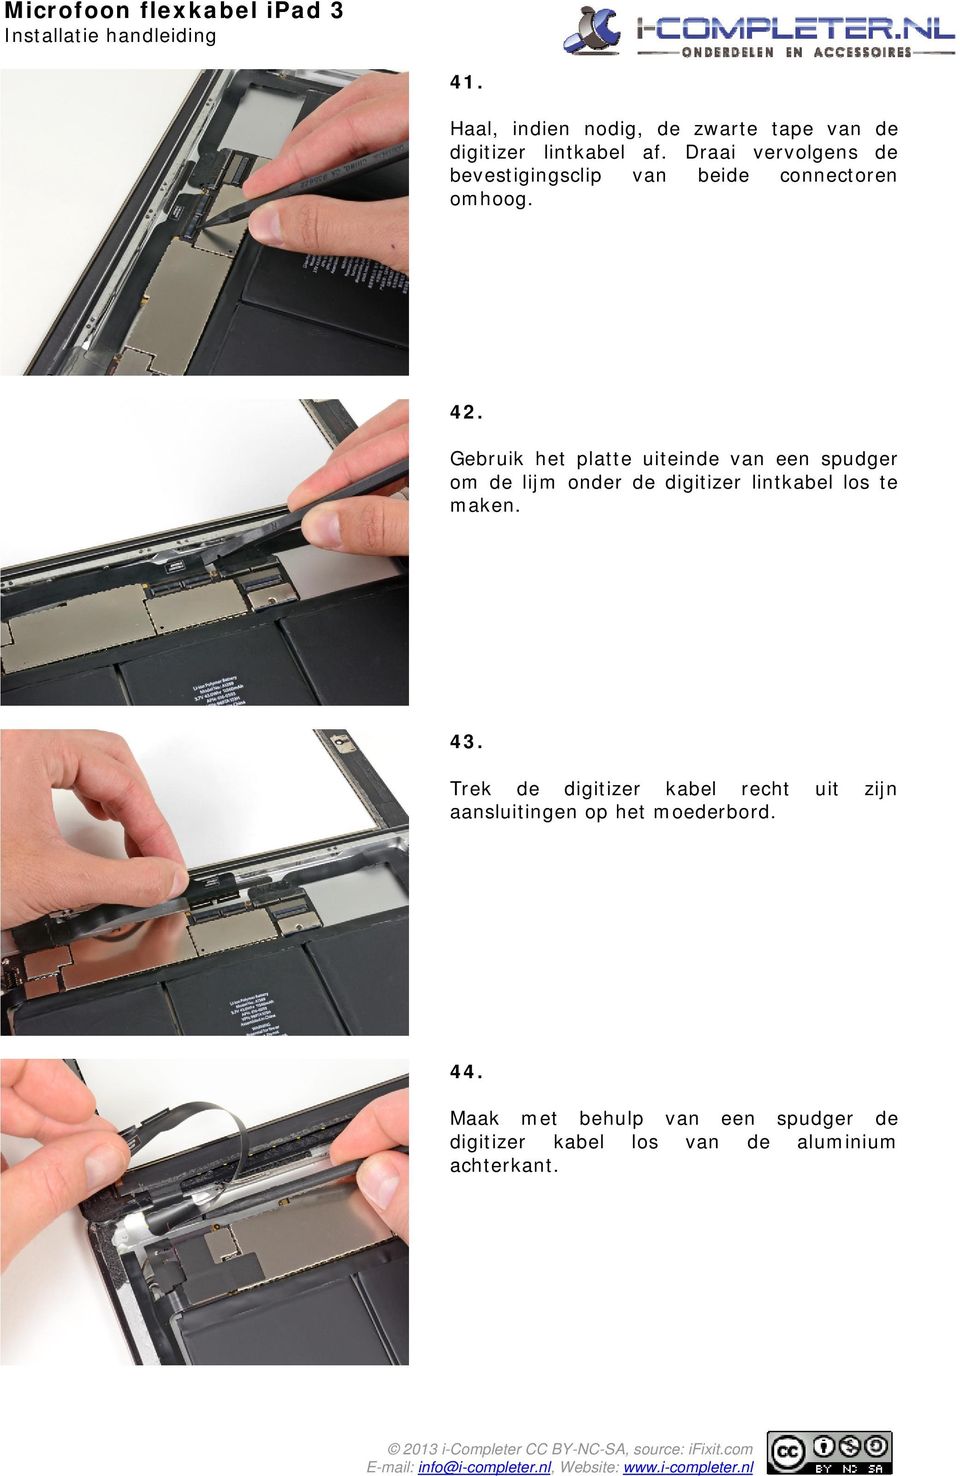 Gebruik het platte uiteinde van een spudger om de lijm onder de digitizer lintkabel los te maken. 43.